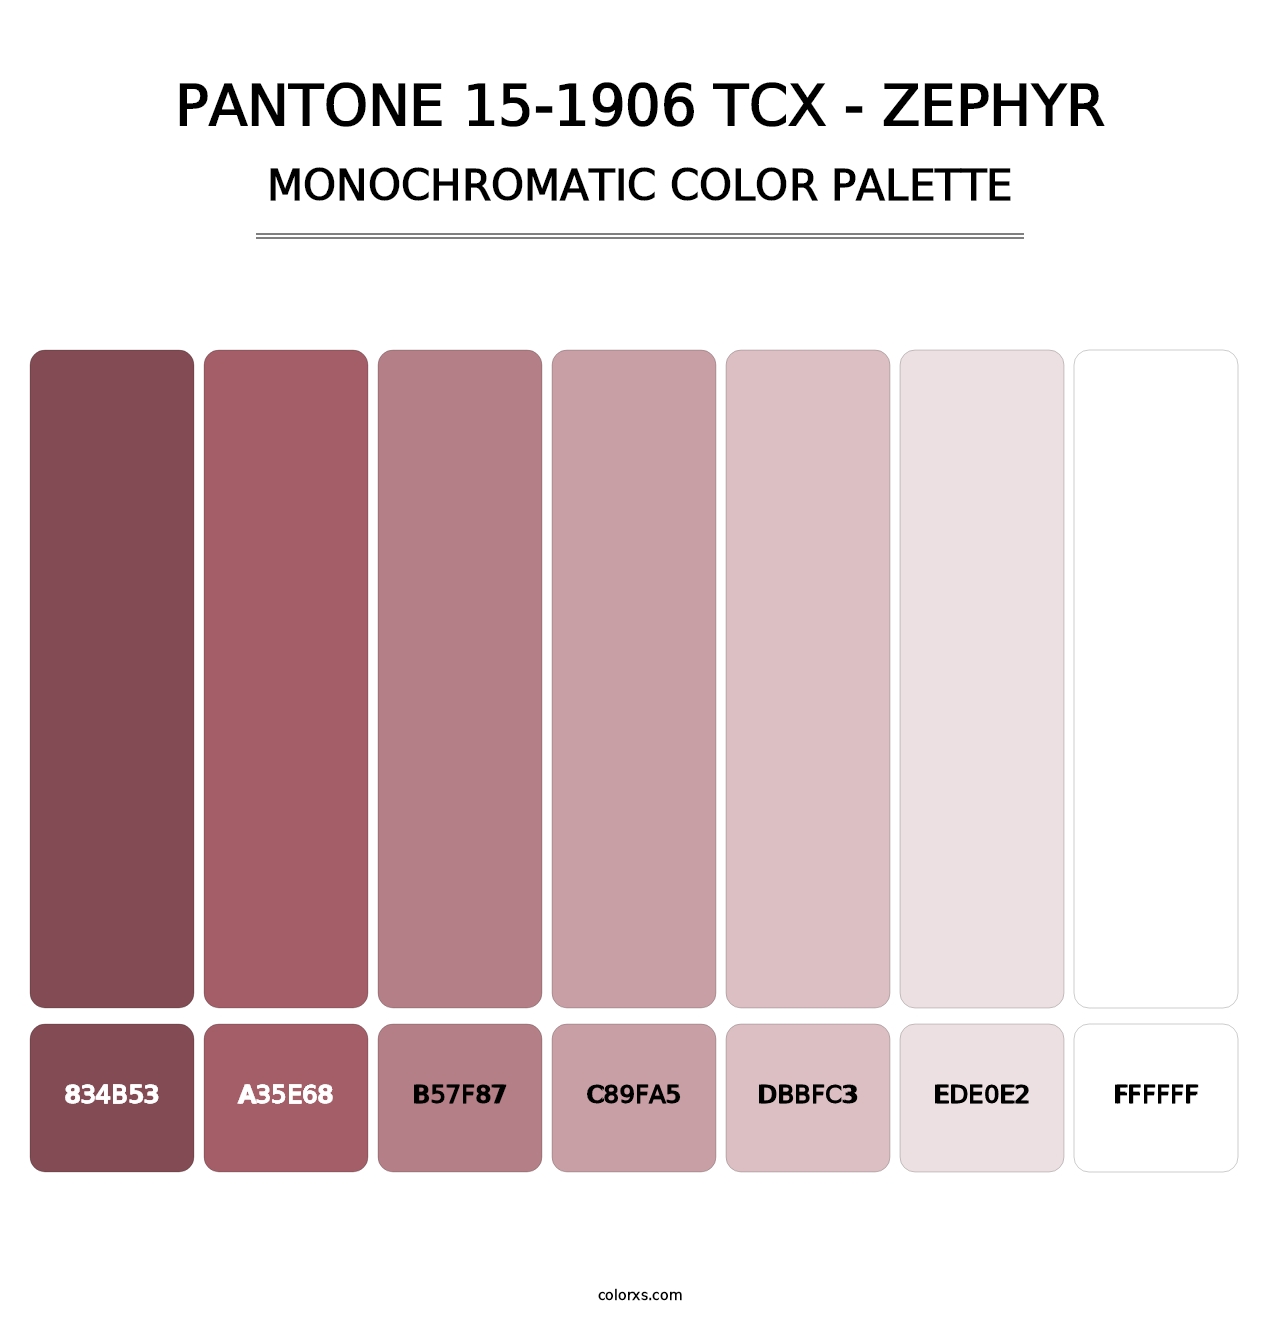 PANTONE 15-1906 TCX - Zephyr - Monochromatic Color Palette